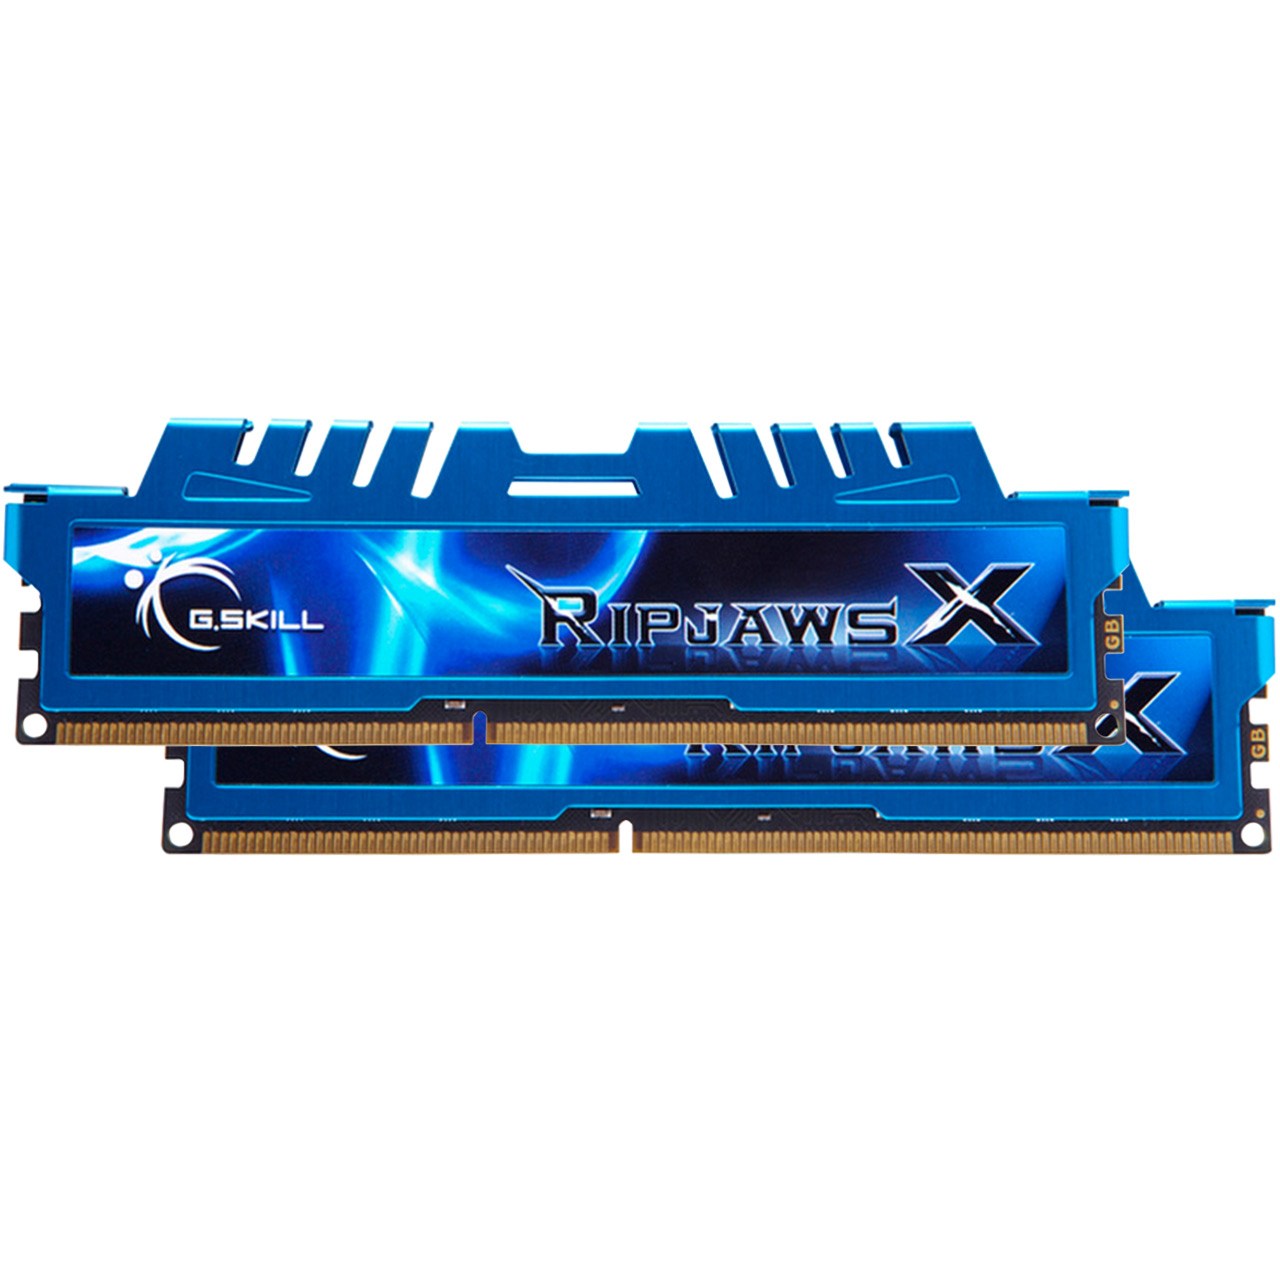 رم دسکتاپ DDR3 دو کاناله 1333 مگاهرتز CL7 جی اسکیل مدل Ripjaws X ظرفیت 8 گیگابایت